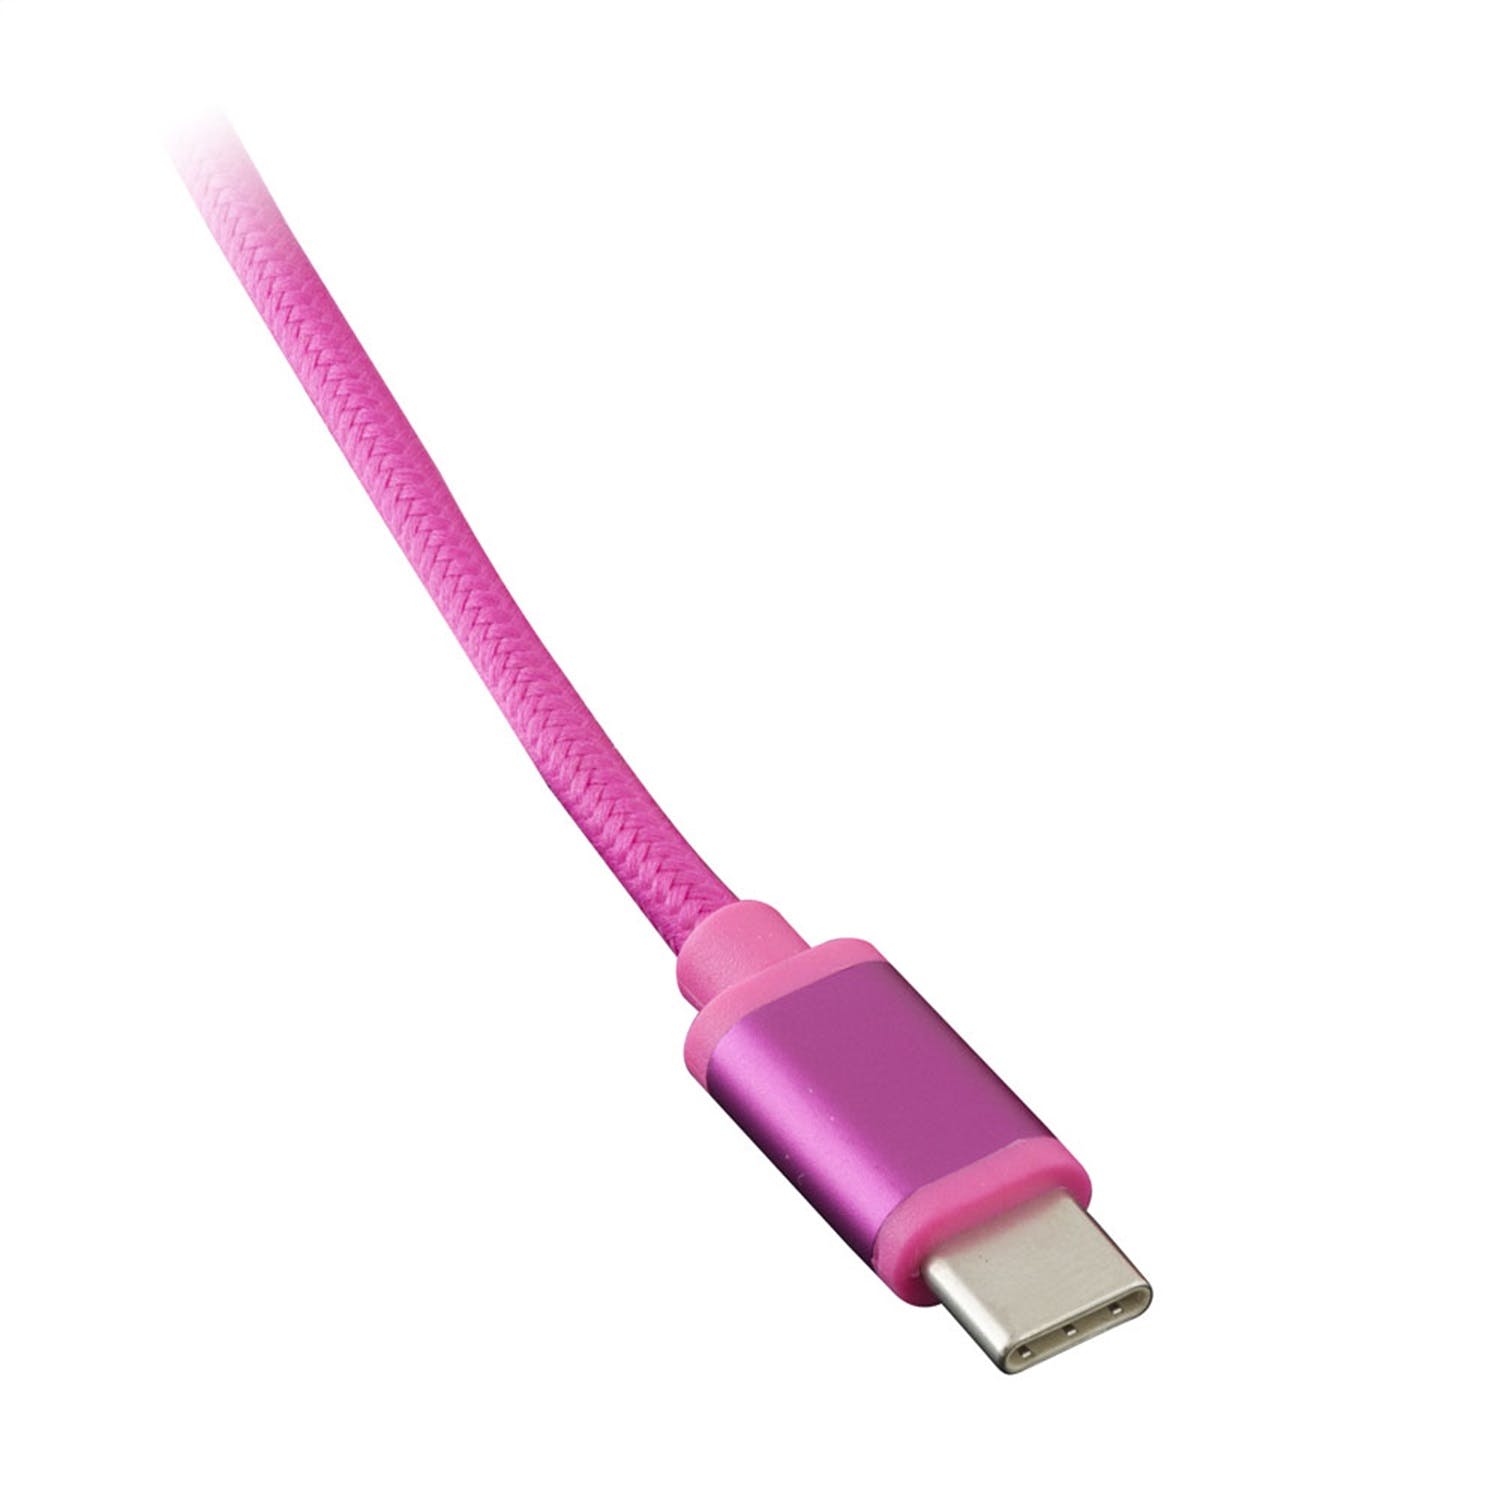 Metra Electronics AX-USBC-PK USB-C Replacement Cable